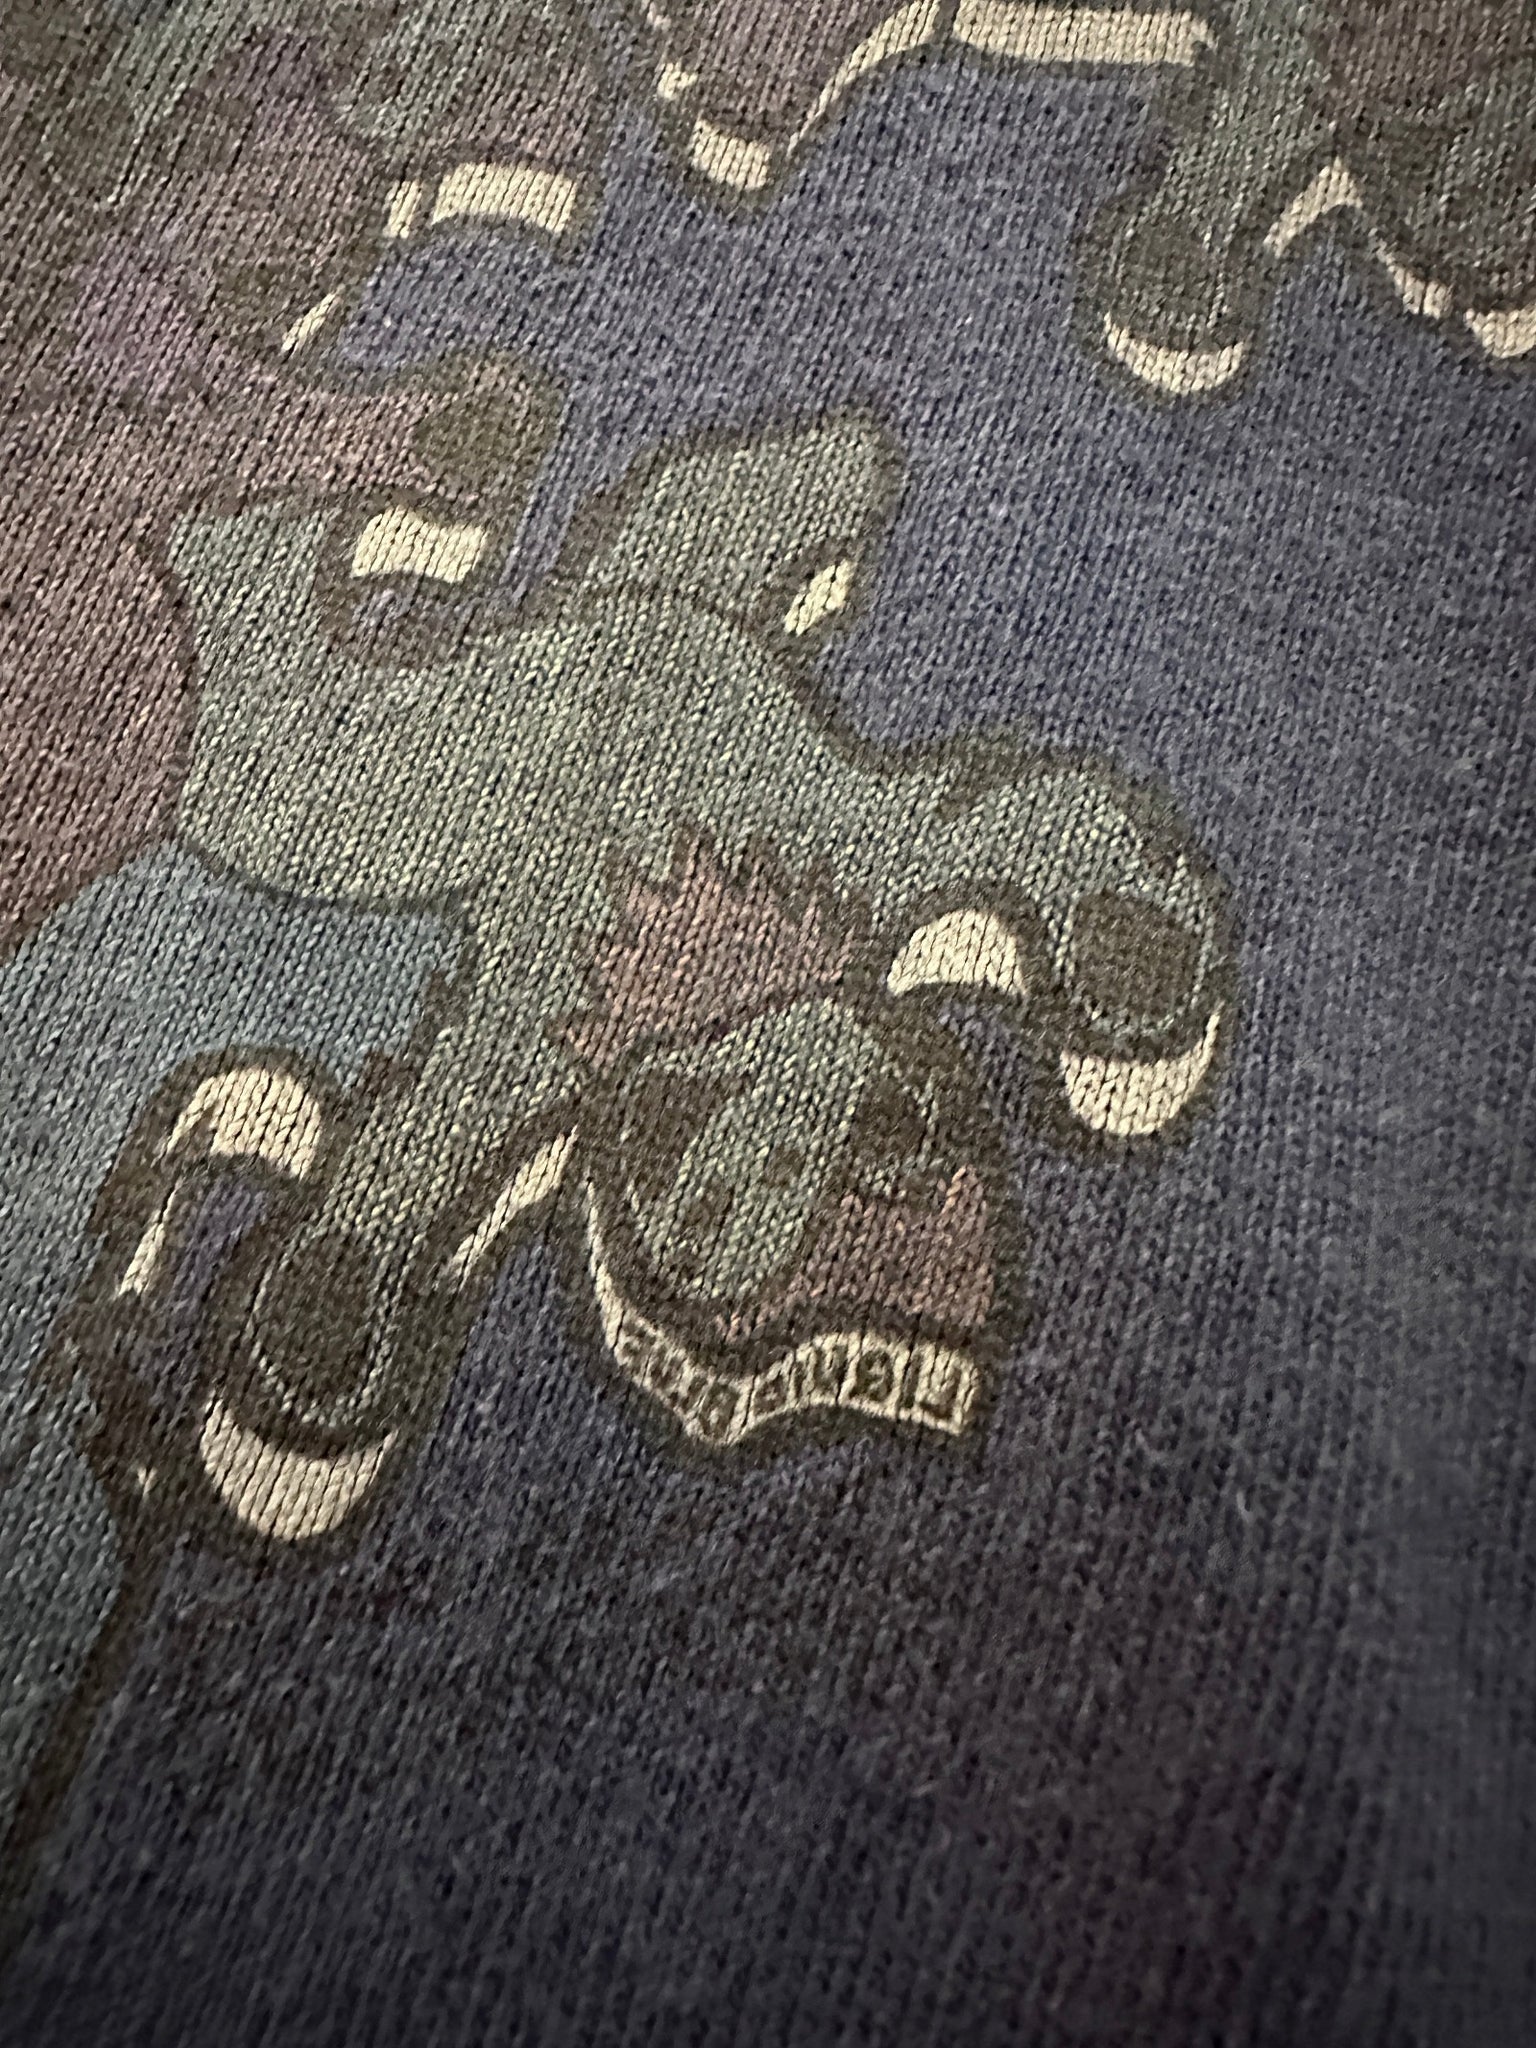 1993 Grateful Dead M C Escher Ascending & Descending T-Shirt - L